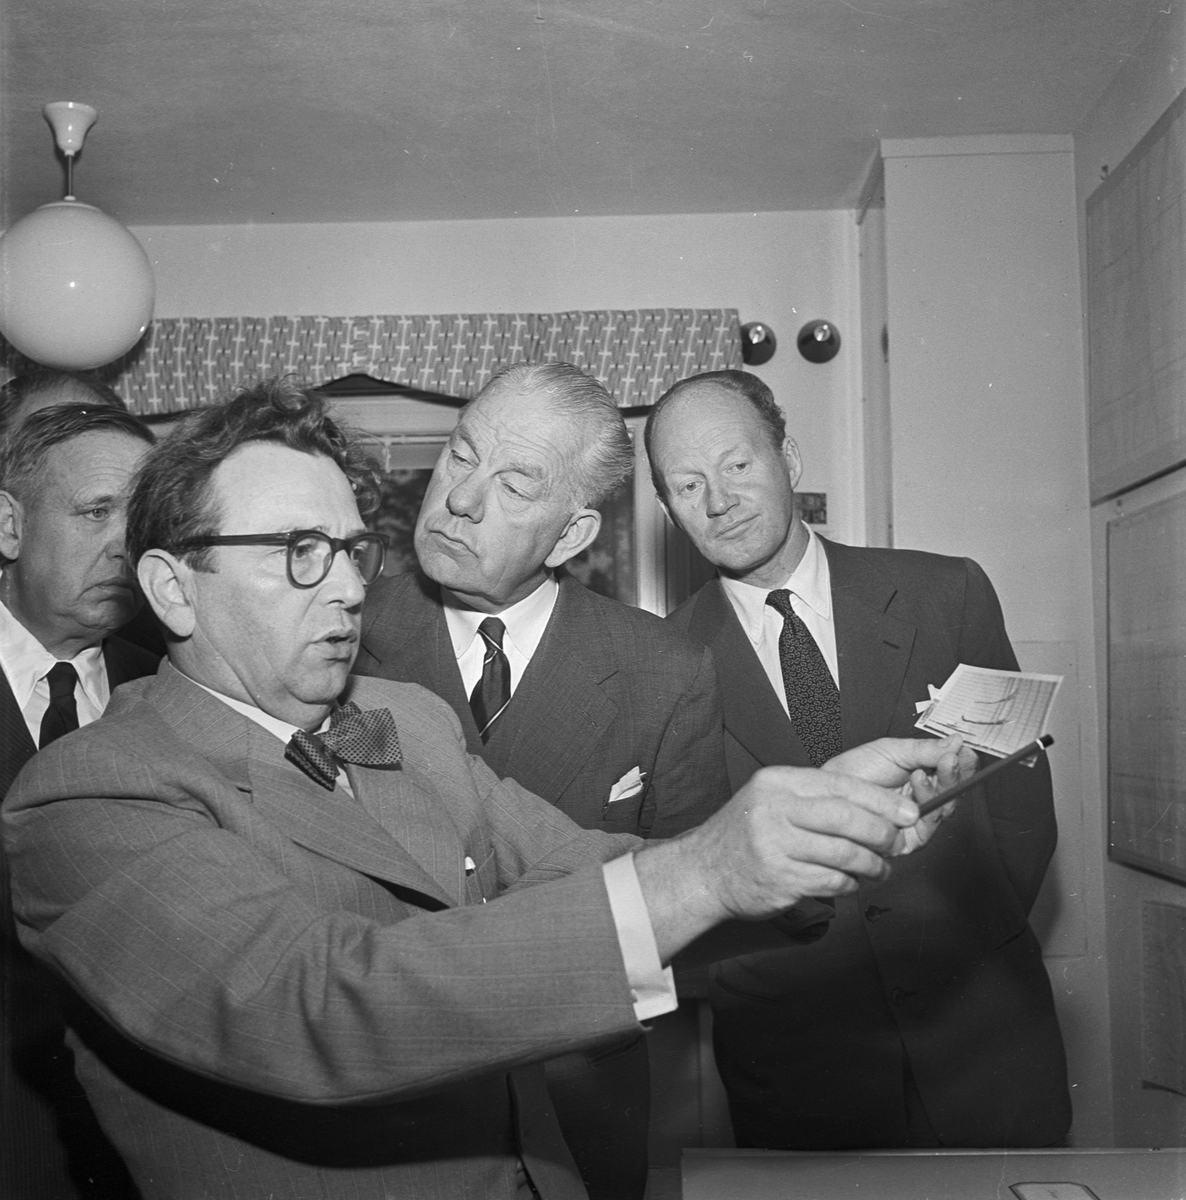 Jonosfärobservatoriet, ingenjör Willy Stoffregen med andra män, Uppsala 1956